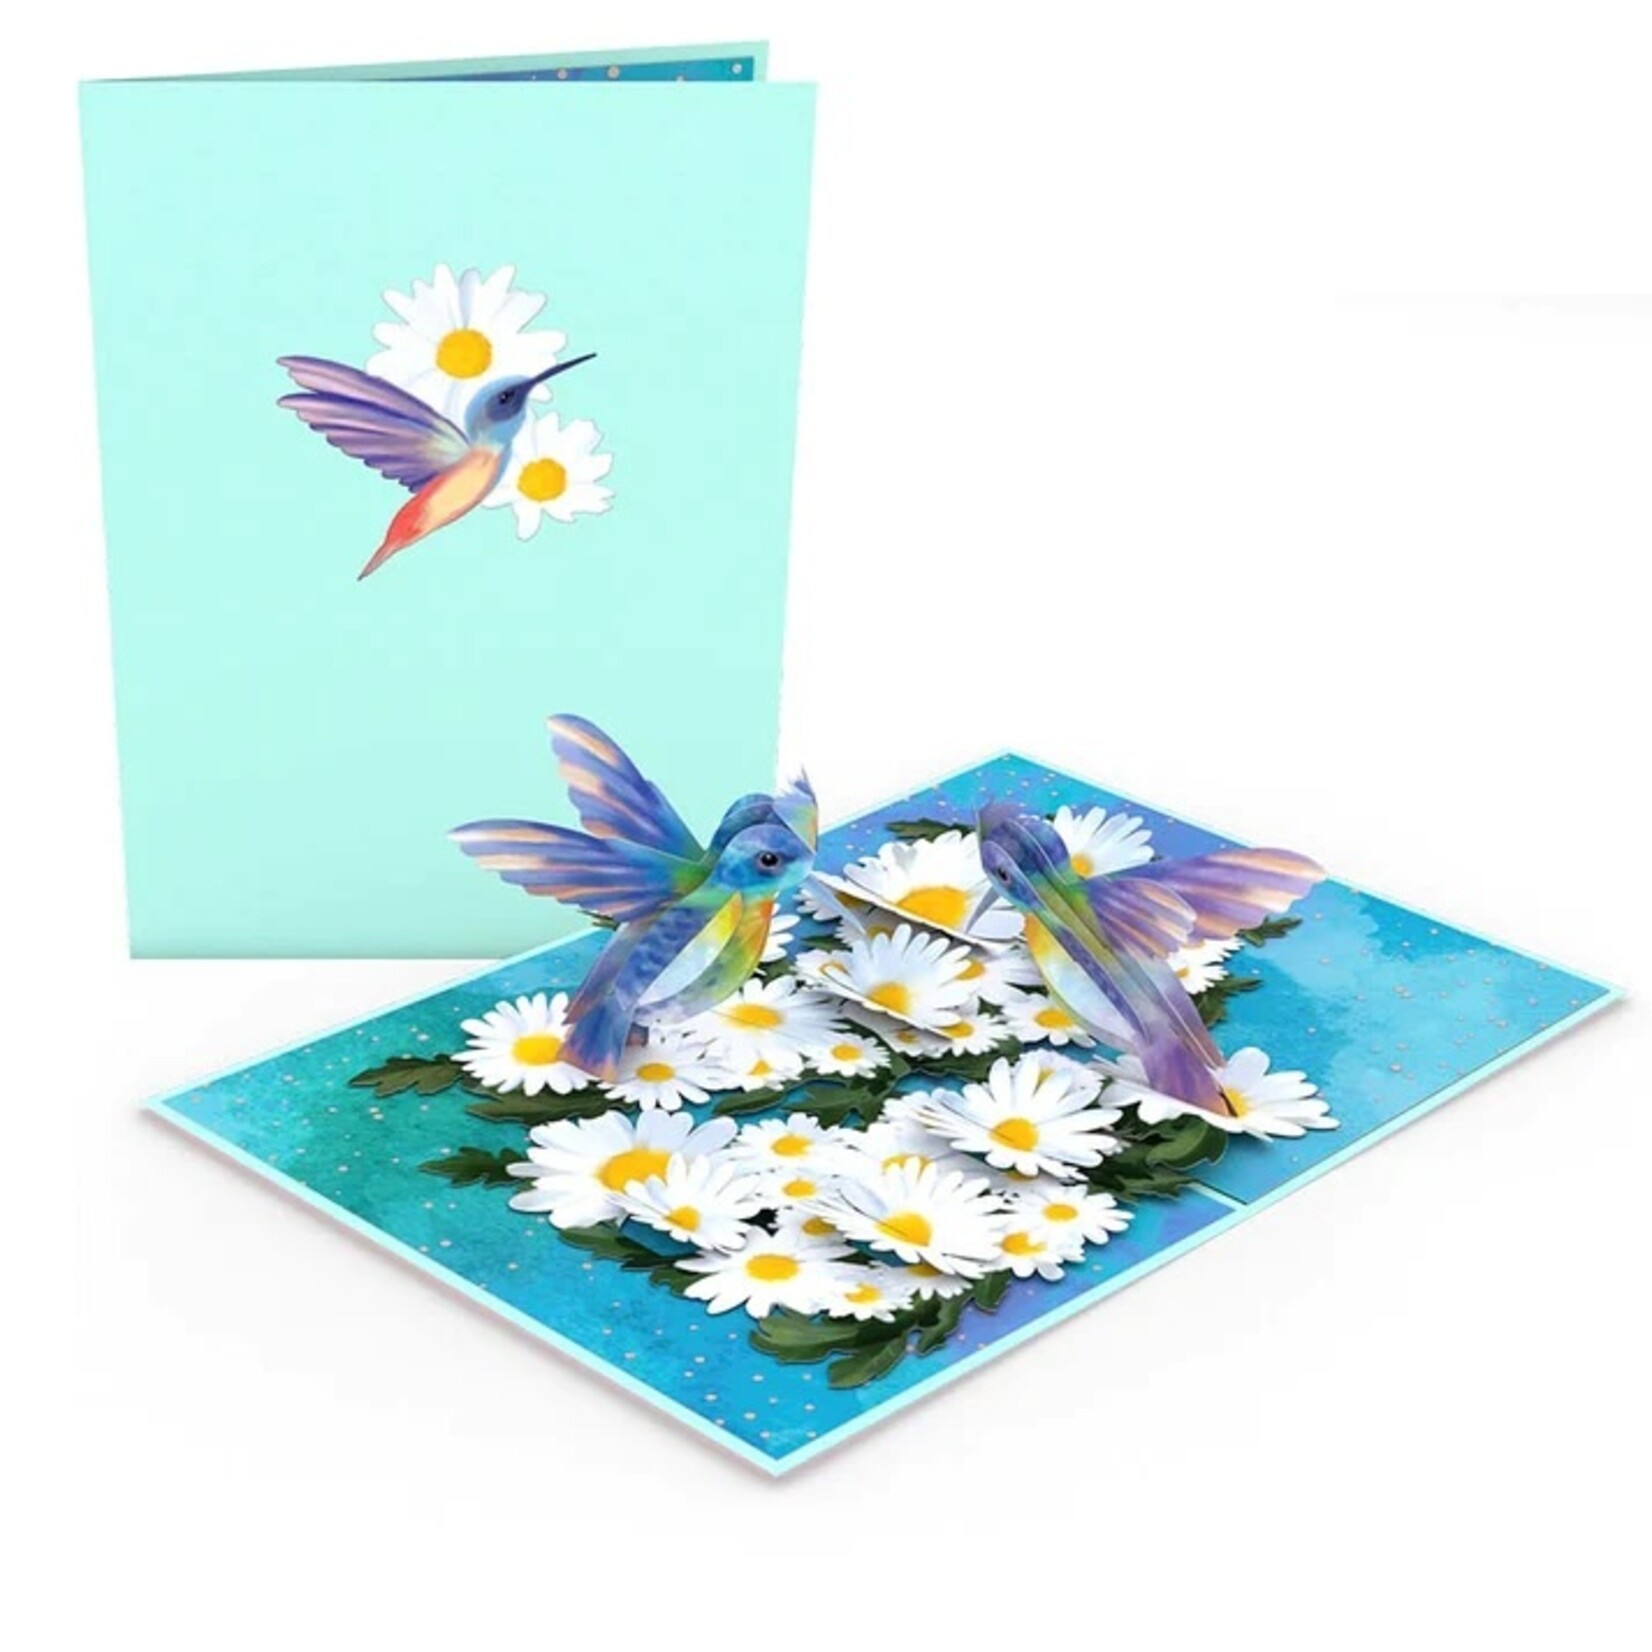 LovePop LovePop Card lp3603 Daisy patch hummingbird